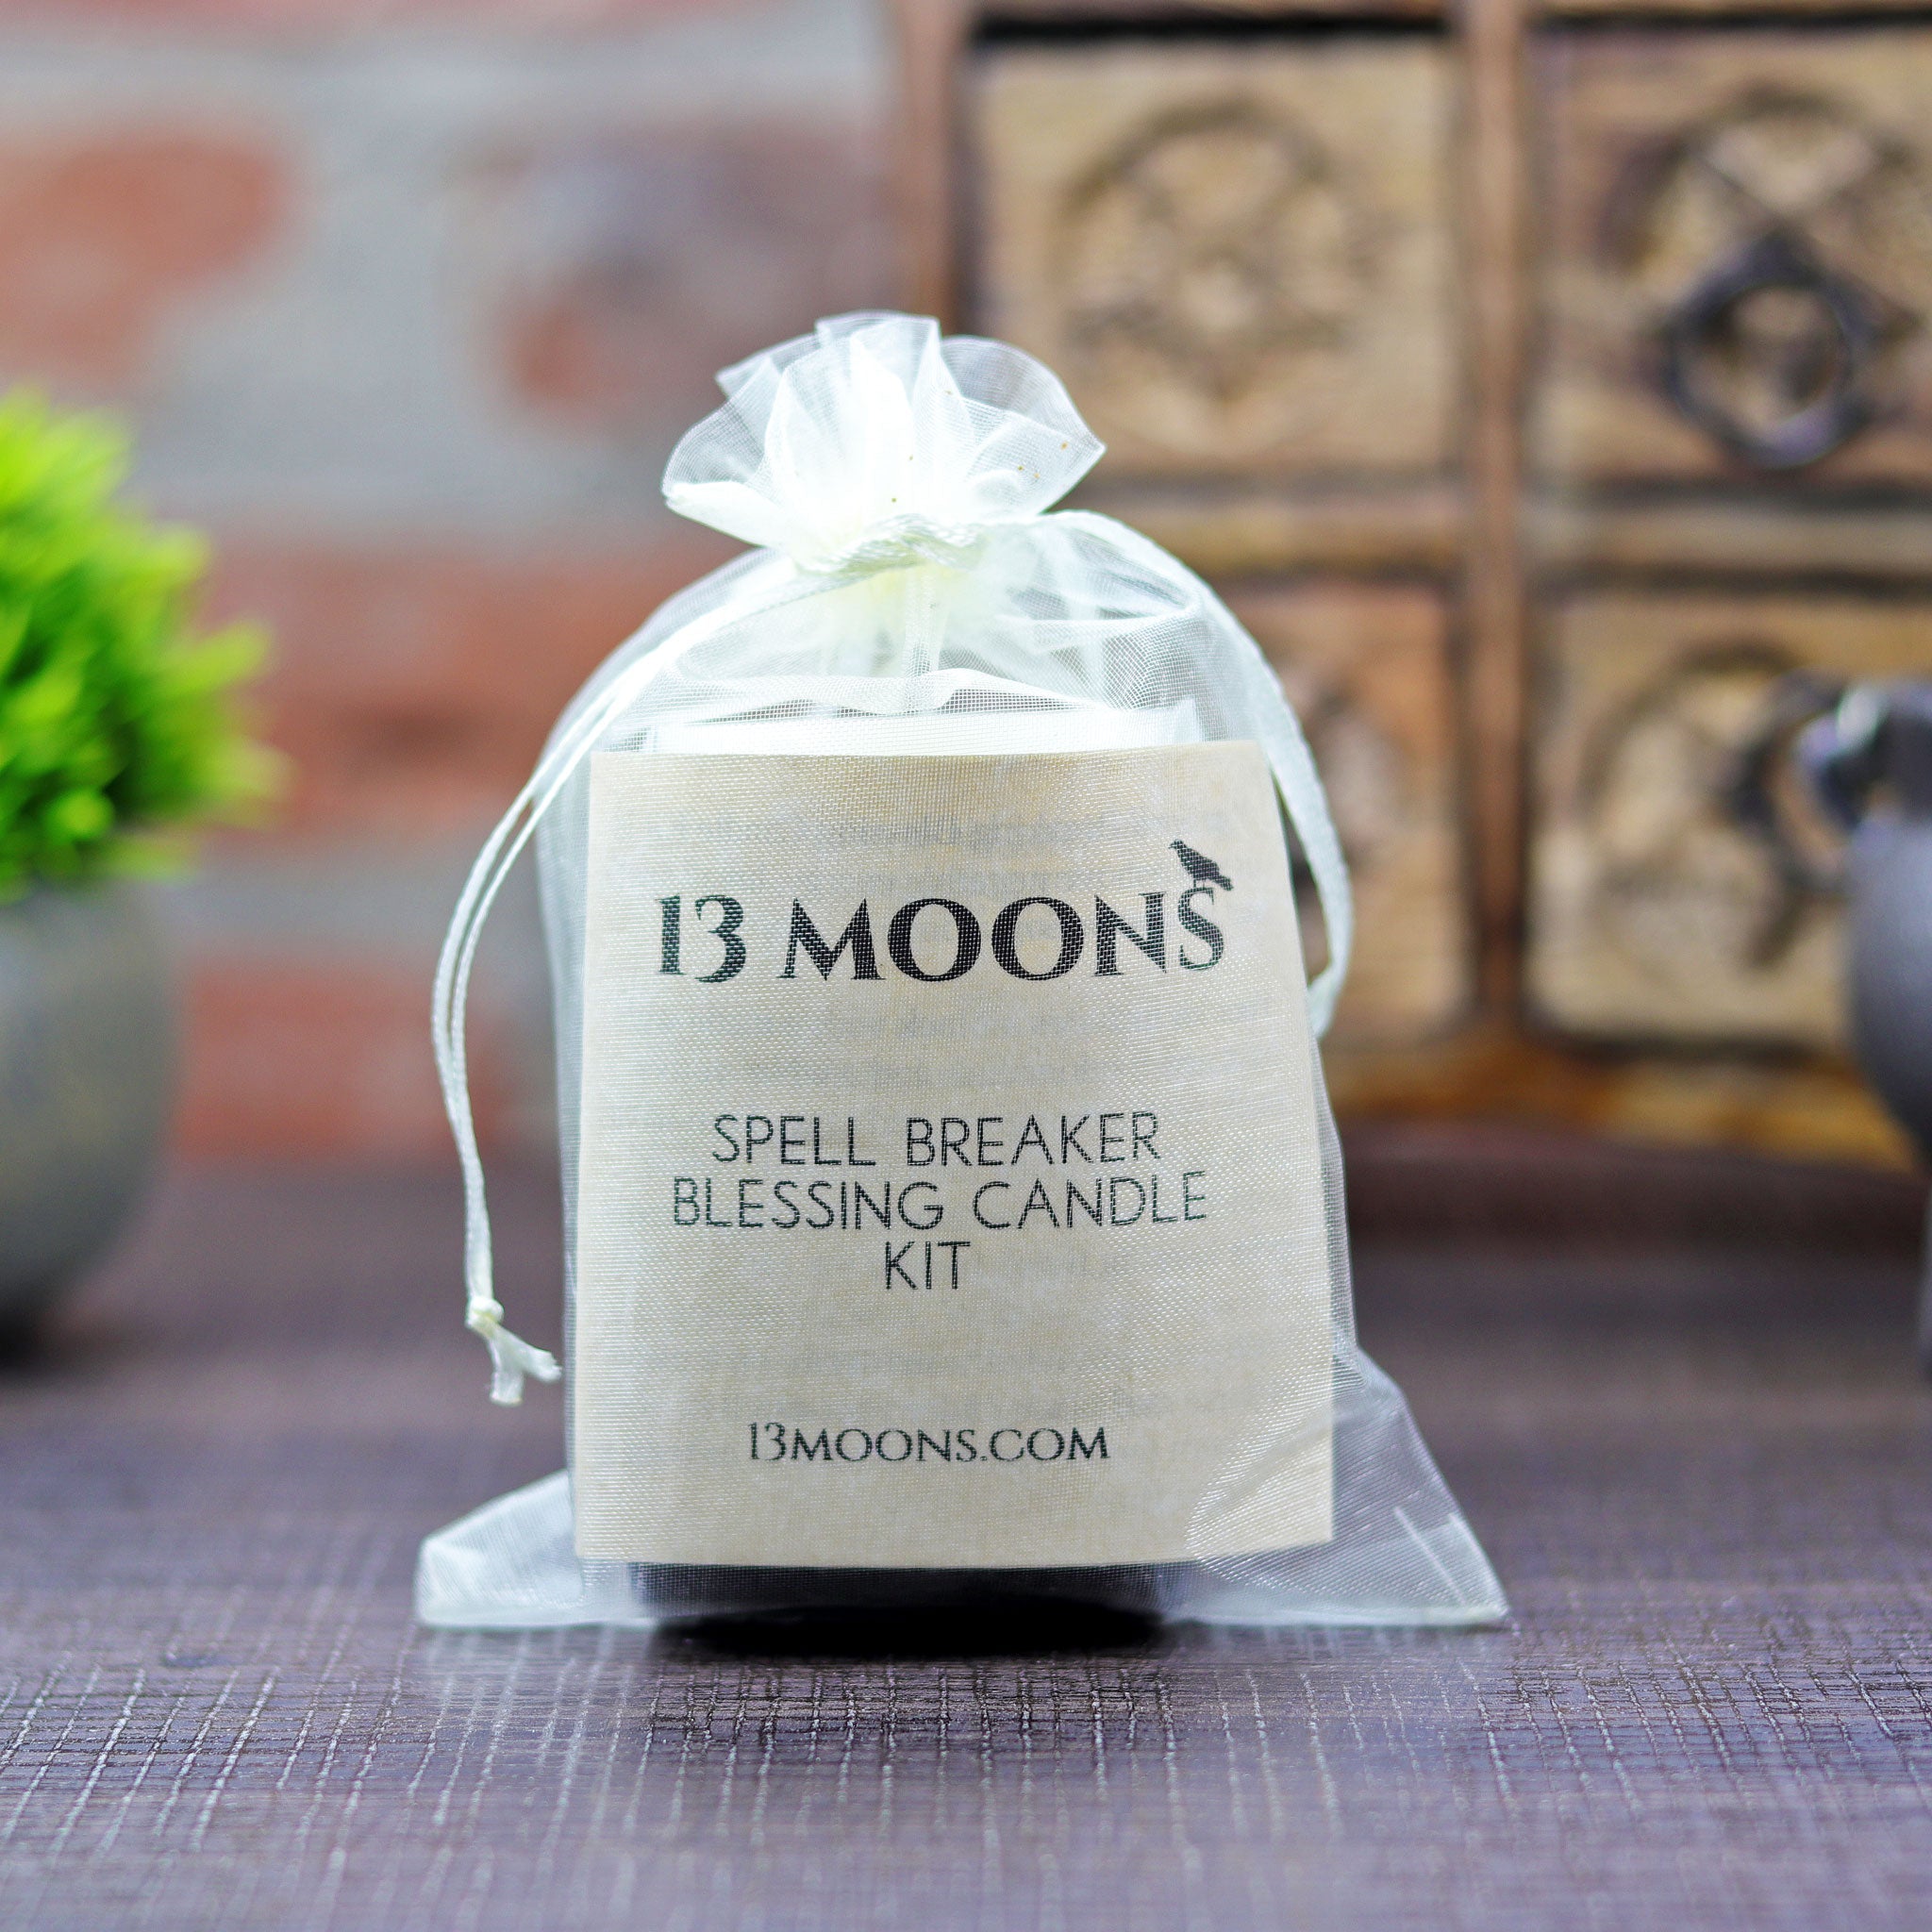 Spell Breaker Blessing Candle Kit - 13 Moons